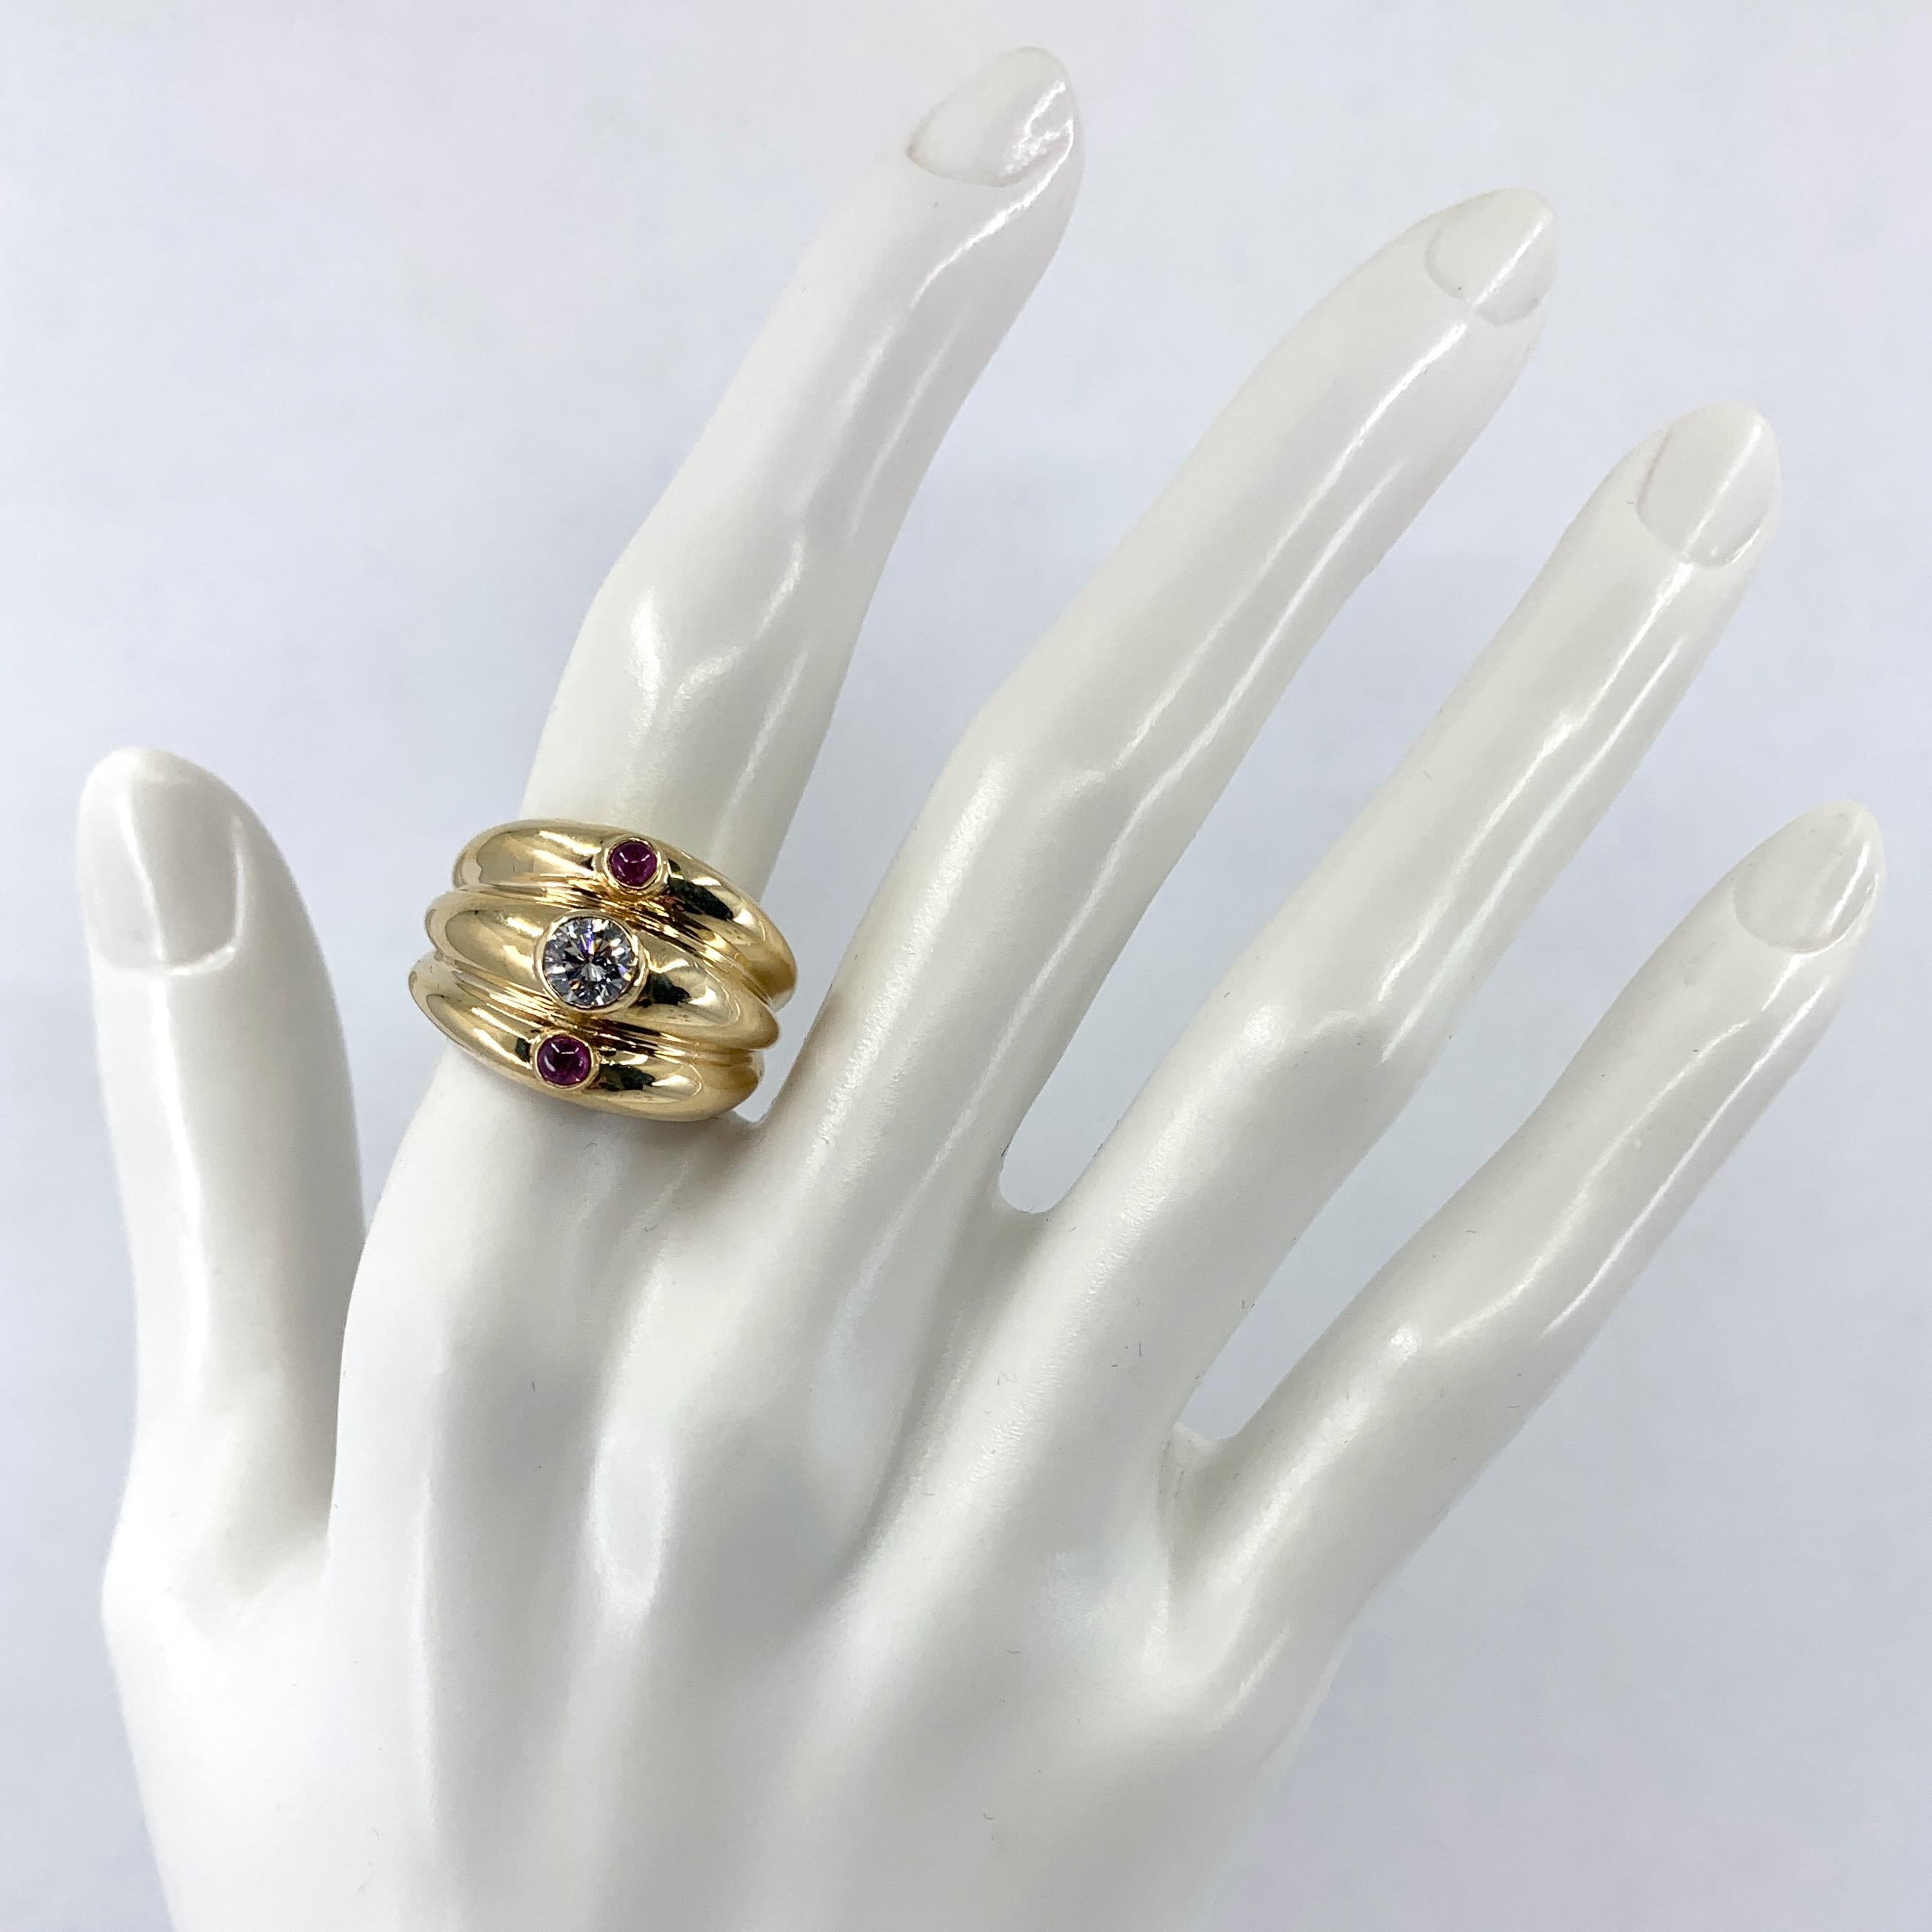 Ce turban moderne en or jaune 14 carats poli d'Eytan Brandes est potelé et joyeux, avec un diamant blanc pur et brillant d'un demi-carat et deux cabochons de rubis rosés.  

Les trois 